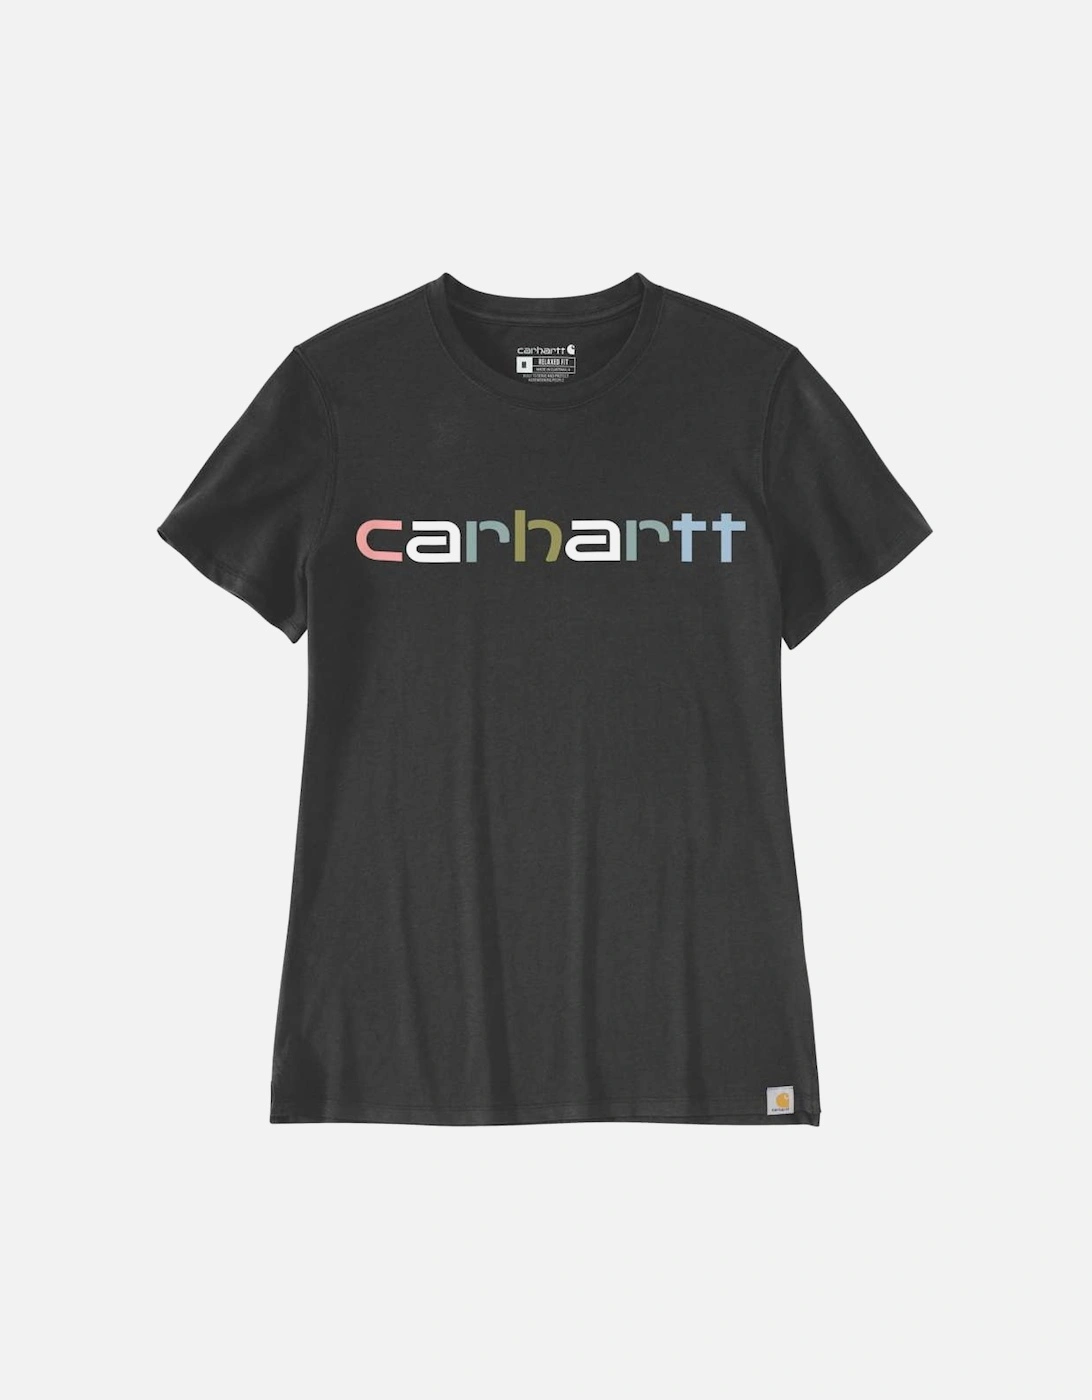 Carhartt Womens Lightweight Short Sleeve Graphic T Shirt, 2 of 1